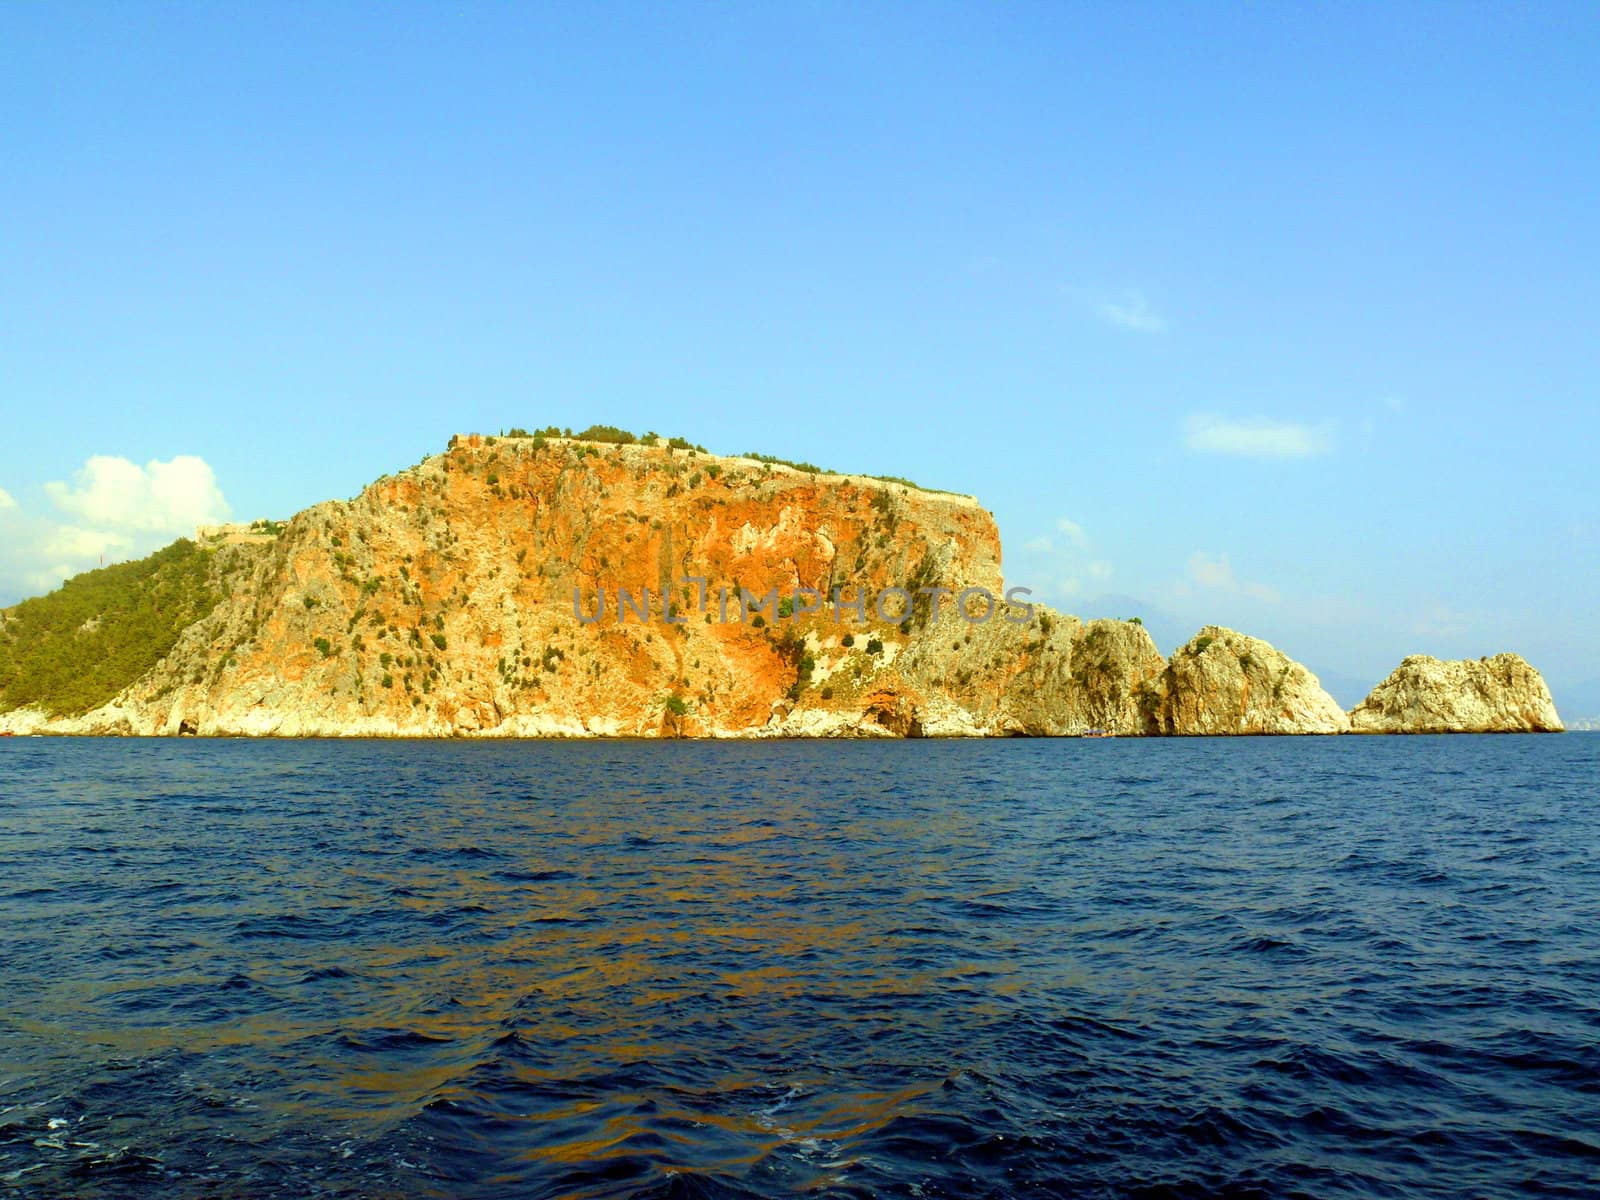 Alania - Cape in mediterranian sea